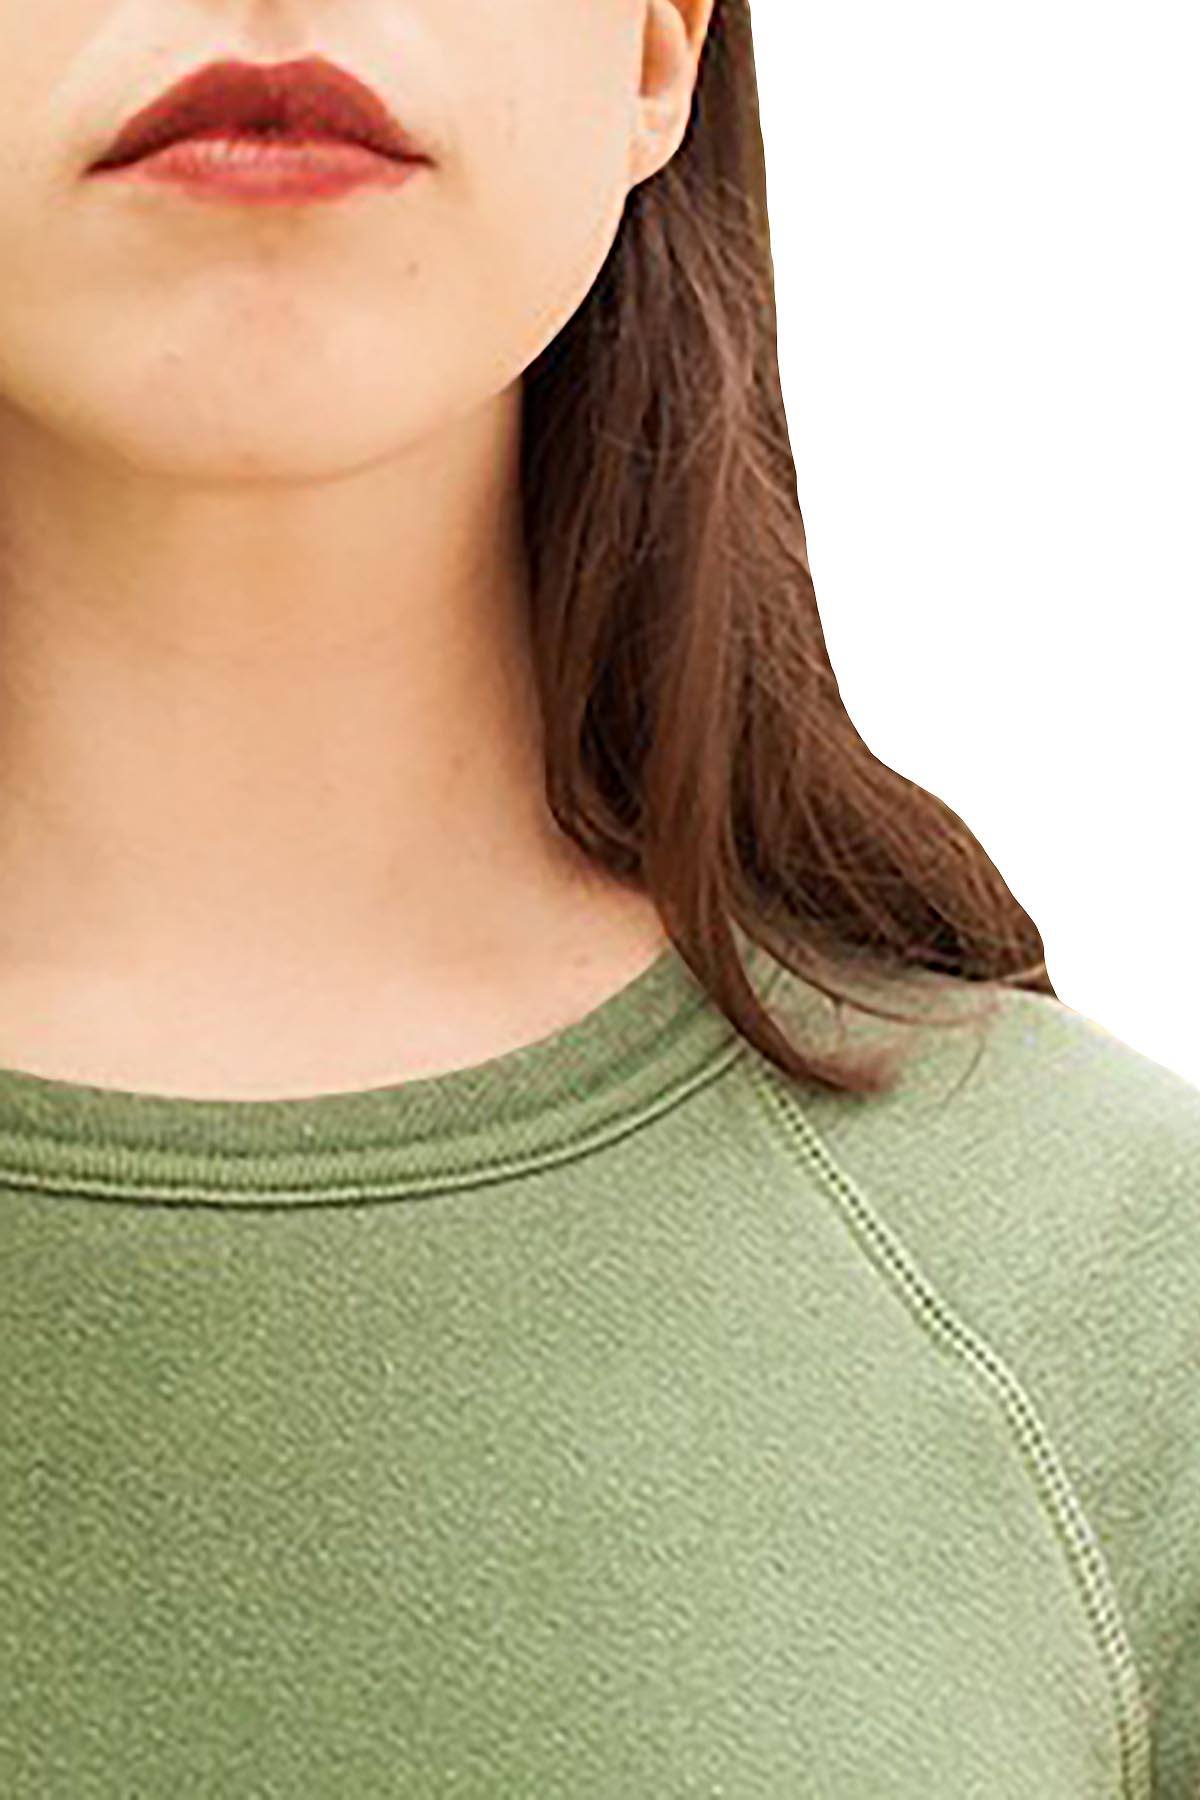 Rxmance Unisex Grass Green Short Sleeve Sweatshirt